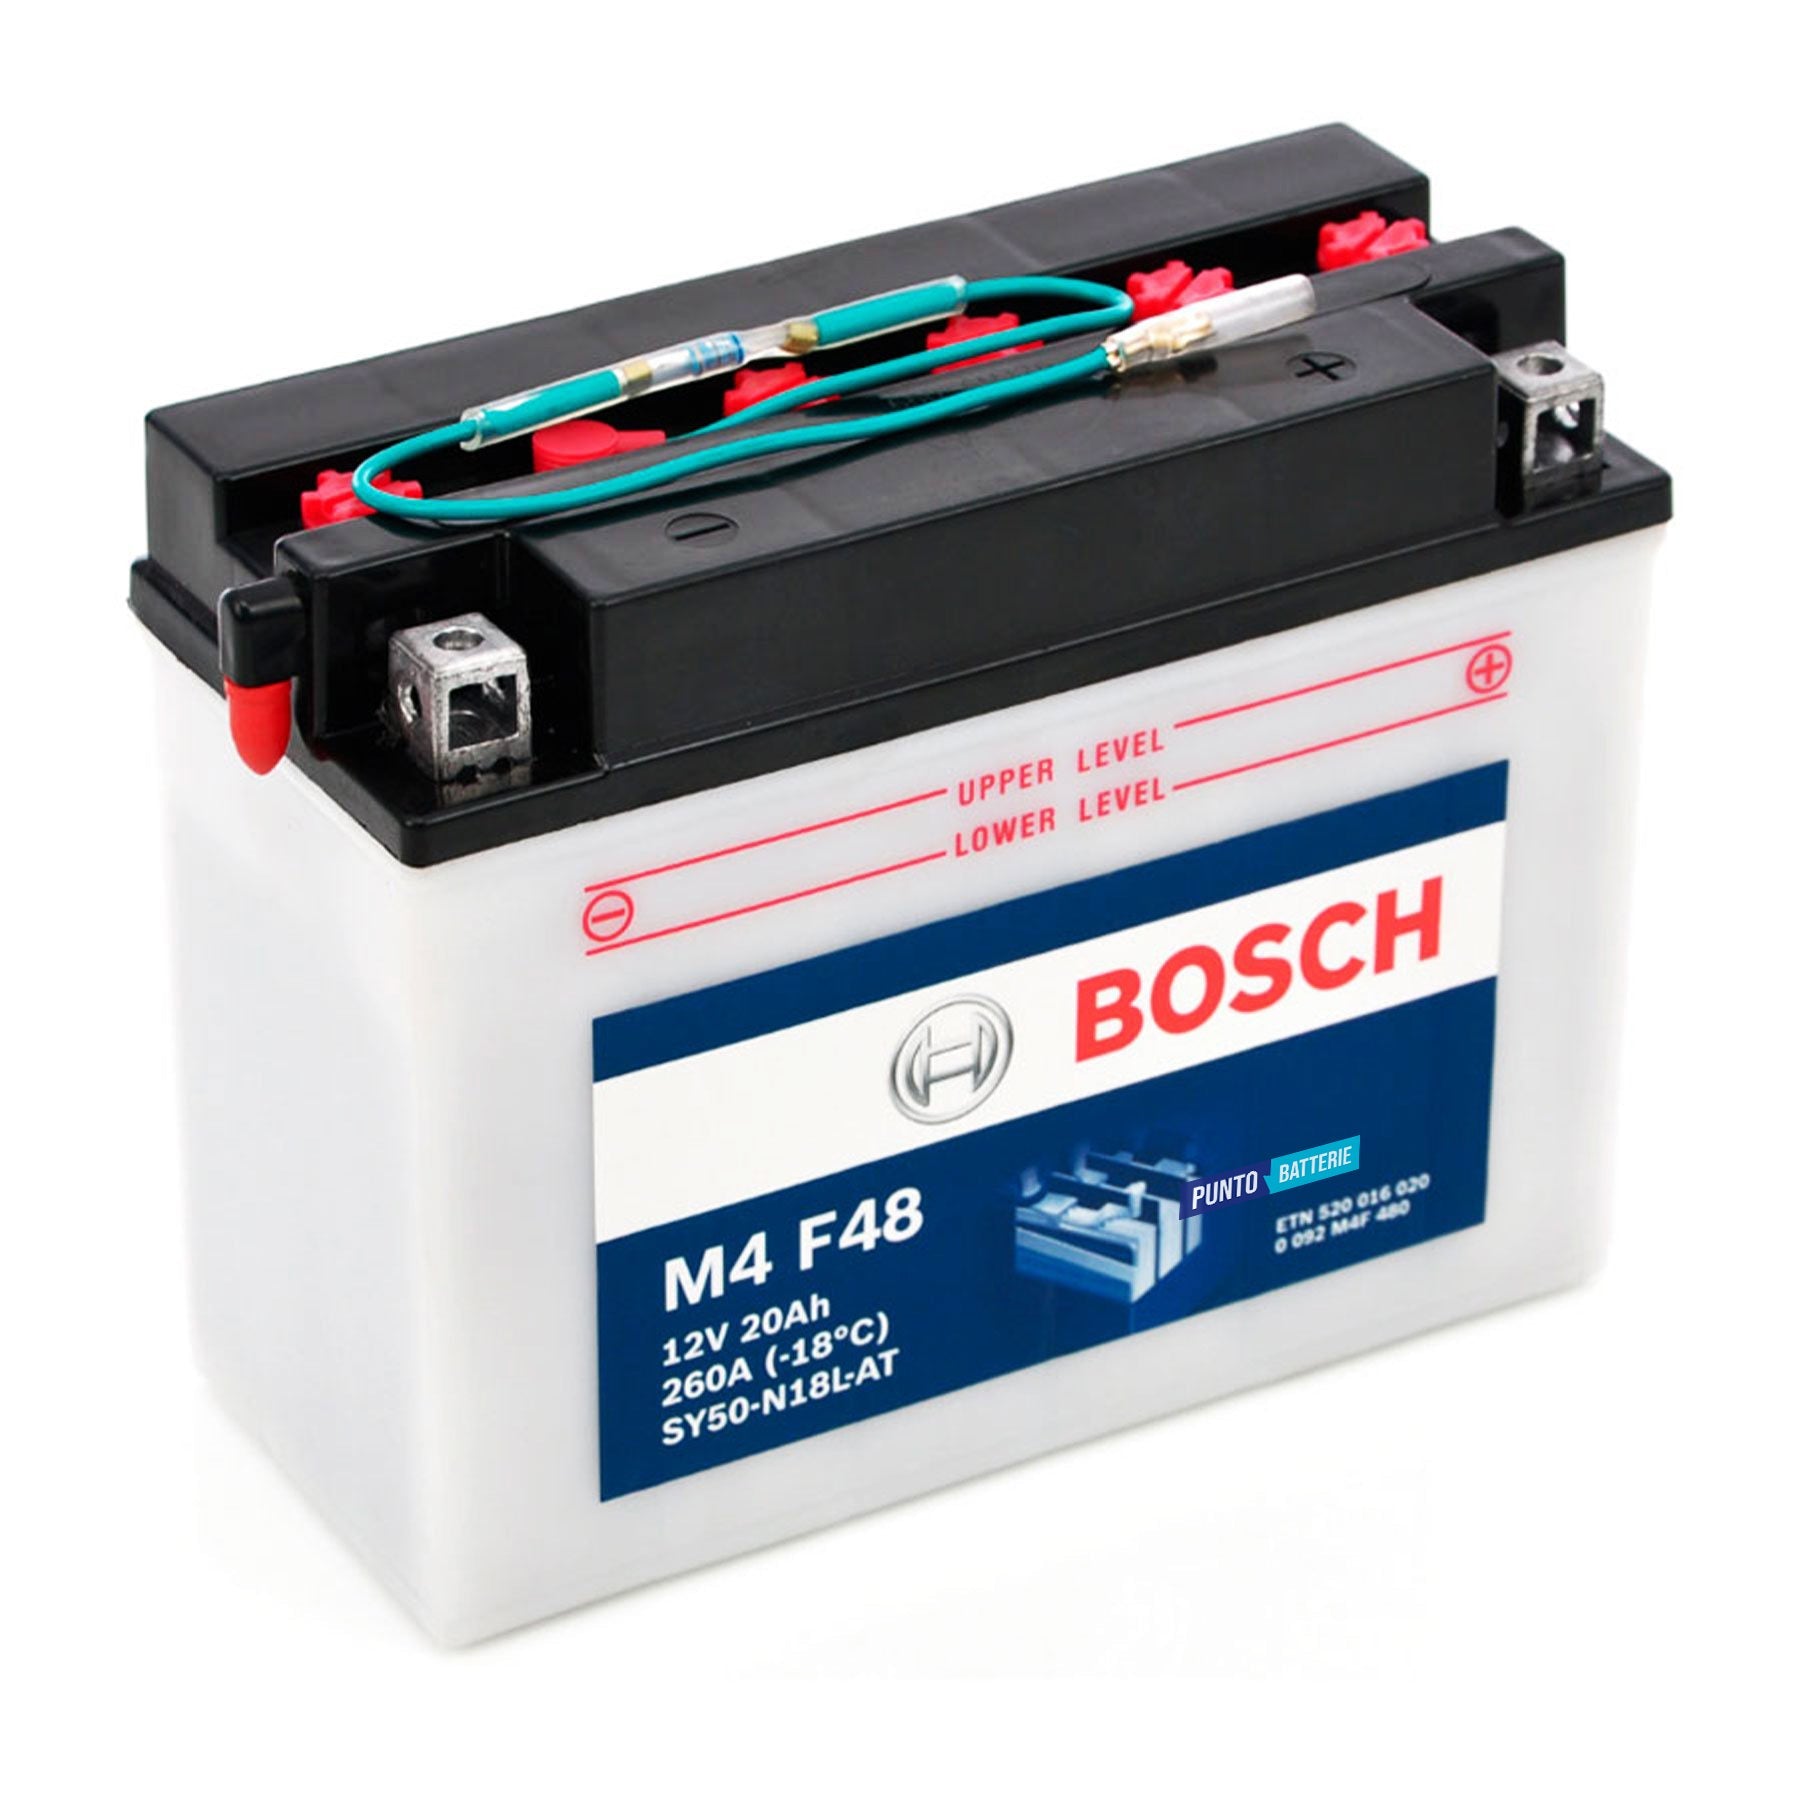 Batteria originale Bosch M4 M4F48, dimensioni 205 x 90 x 162, polo positivo a destra, 12 volt, 20 amperora, 260 ampere. Batteria per moto, scooter e powersport.